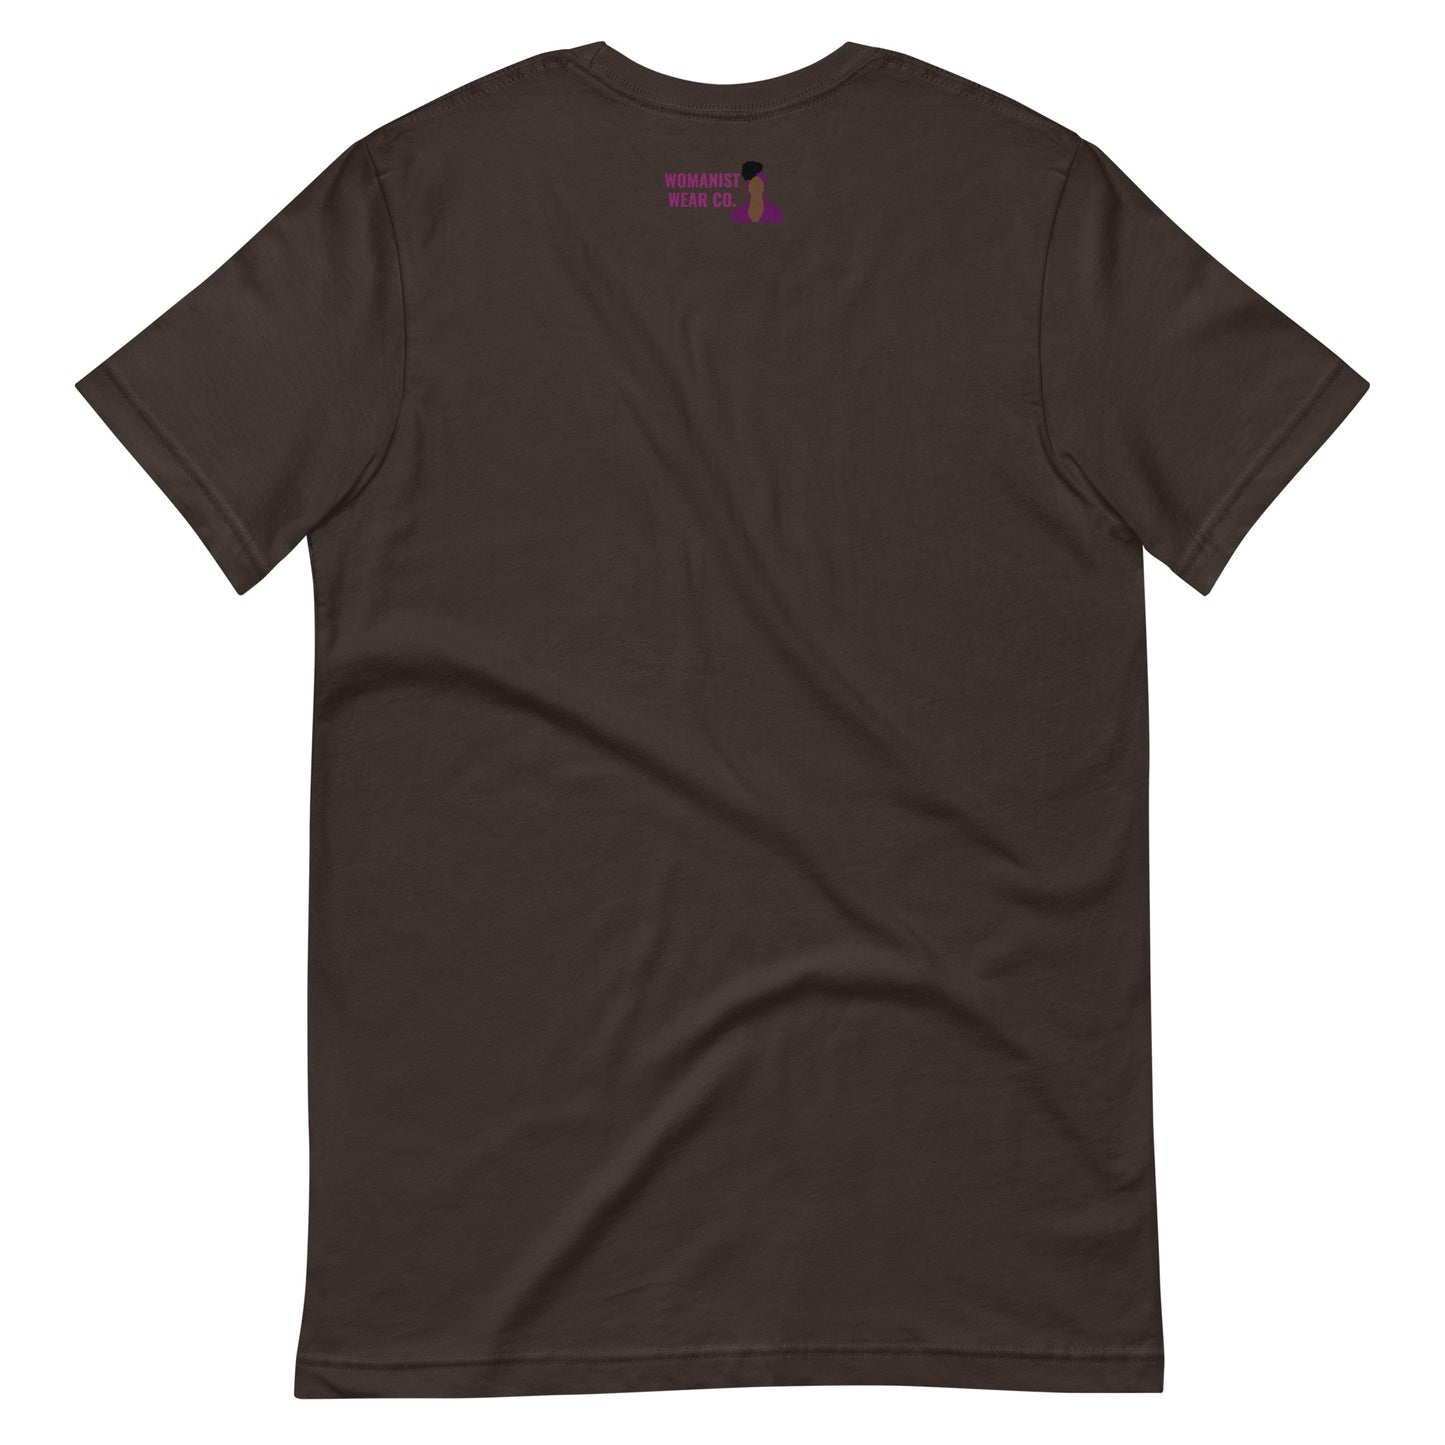 Brown Beauty Vulva T-Shirt